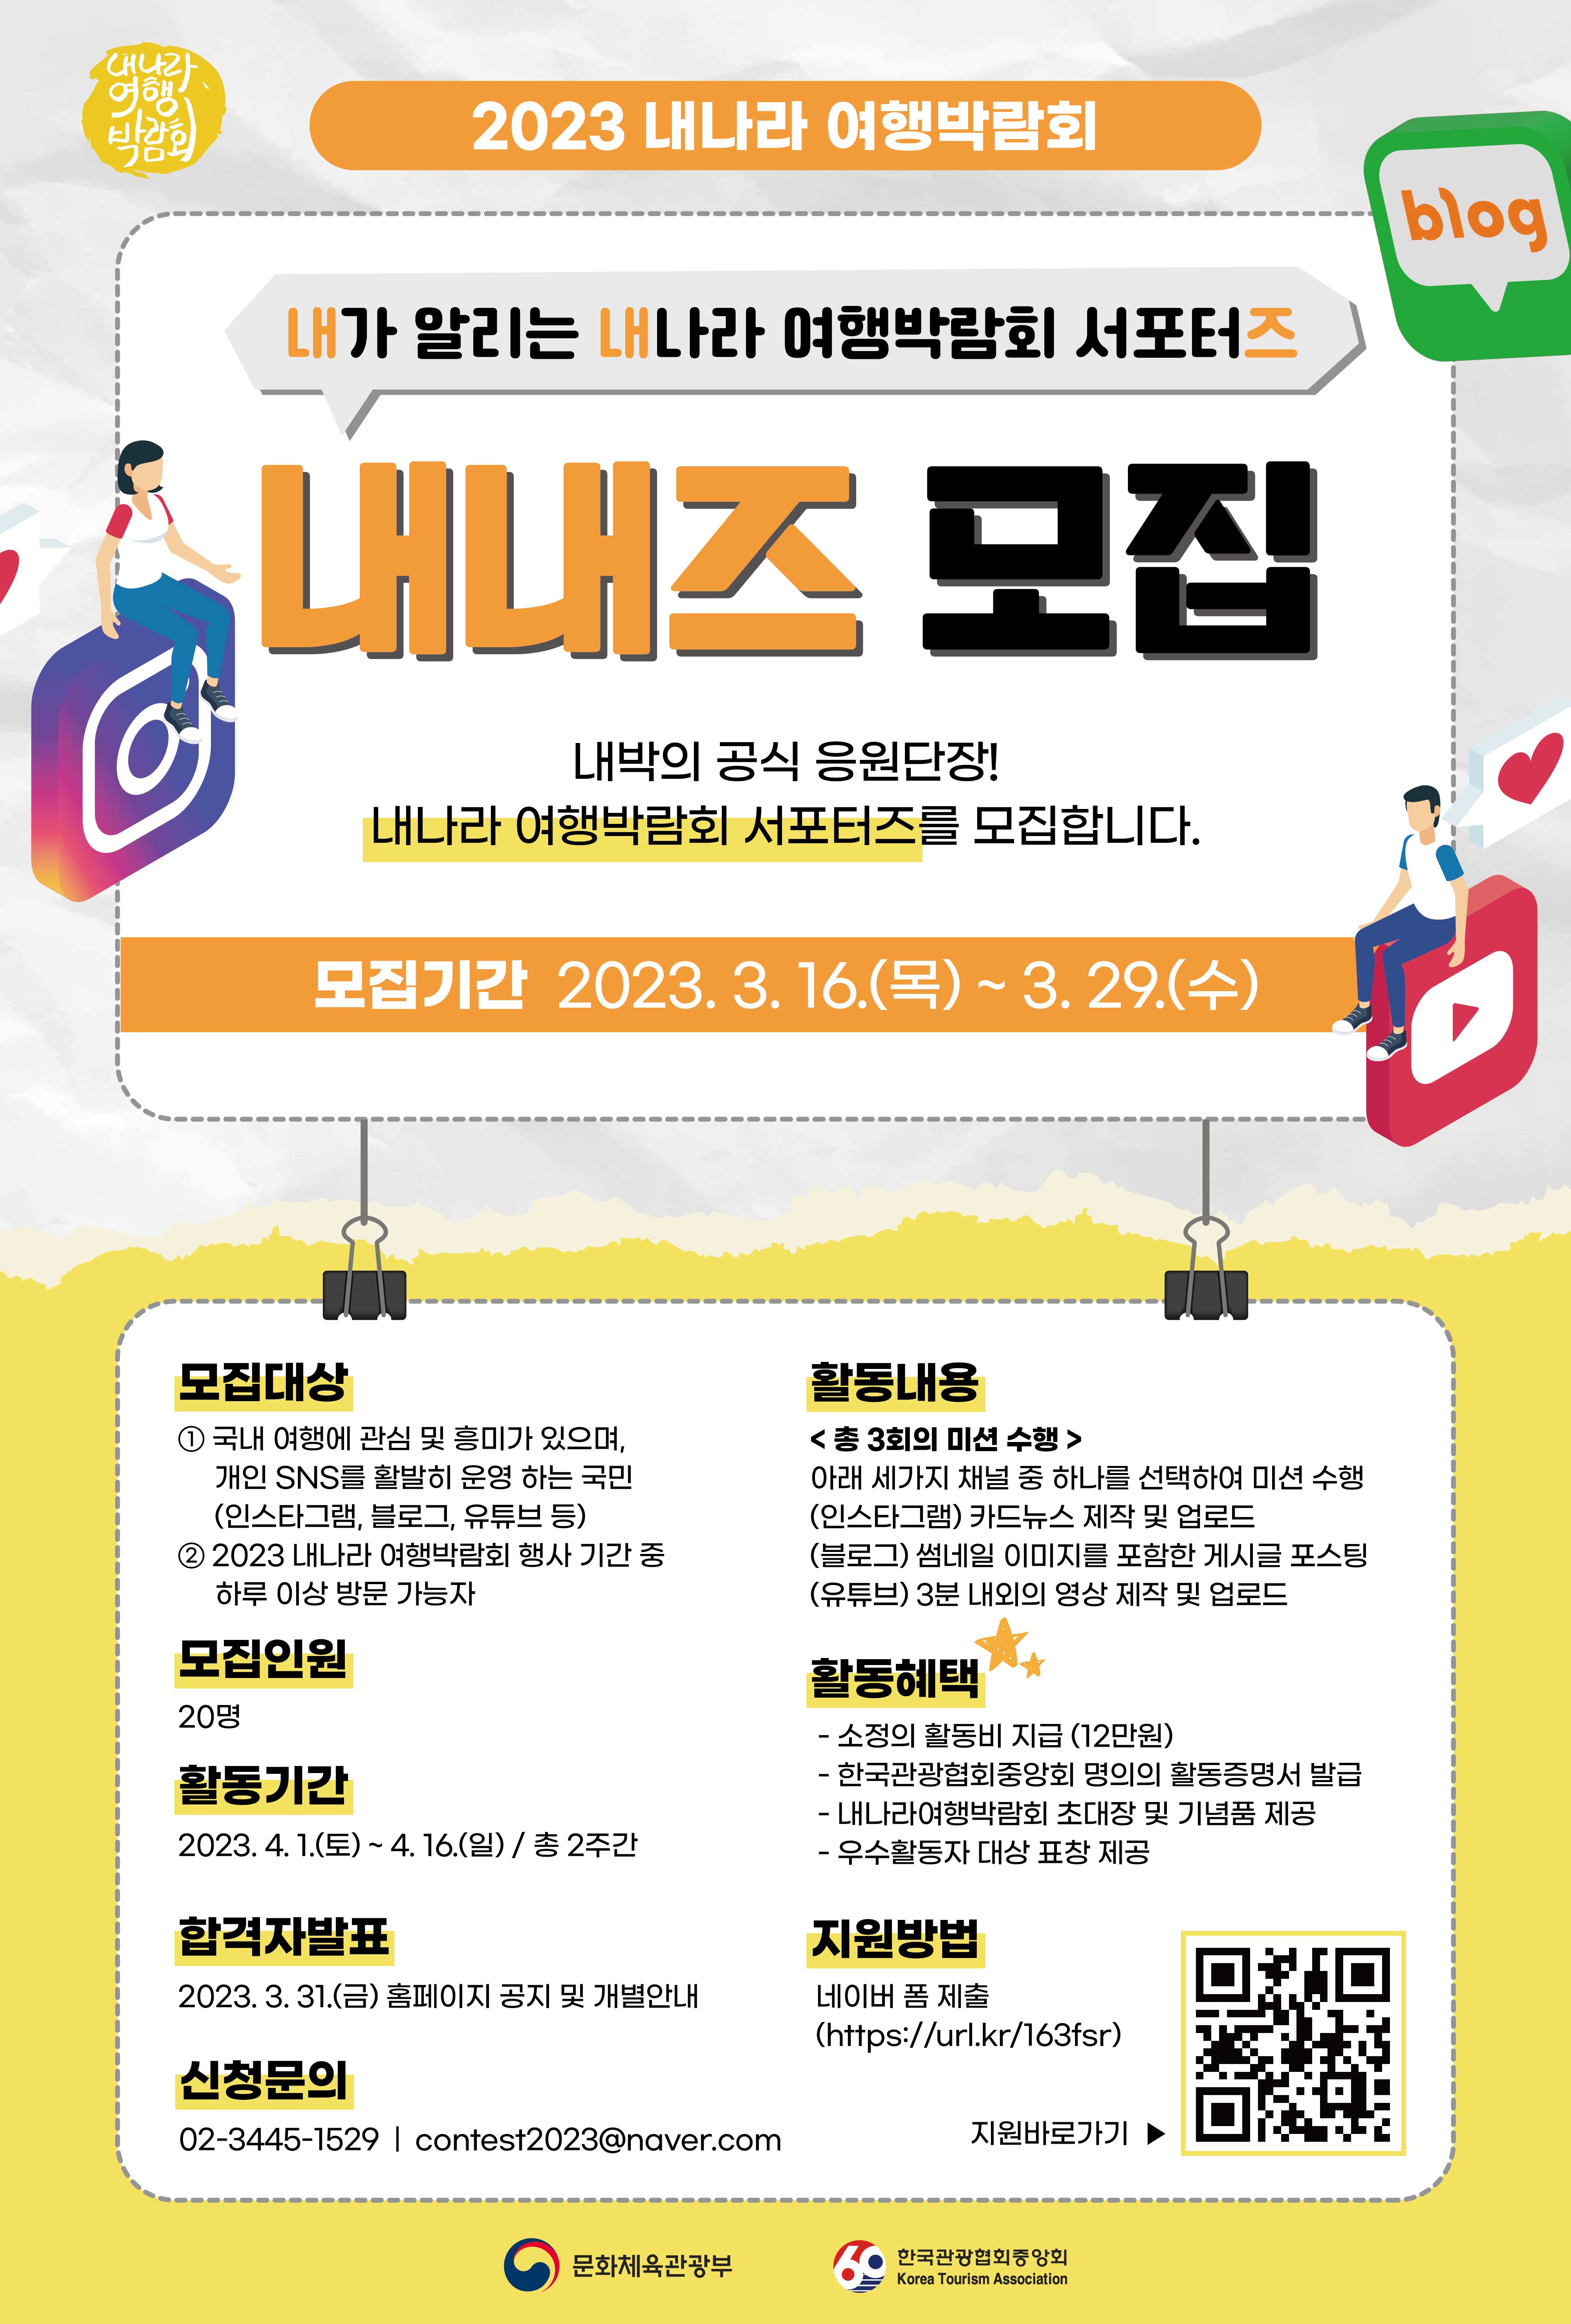 2023 내나라 여행박람회 공식 서포터즈 '내내즈' 모집